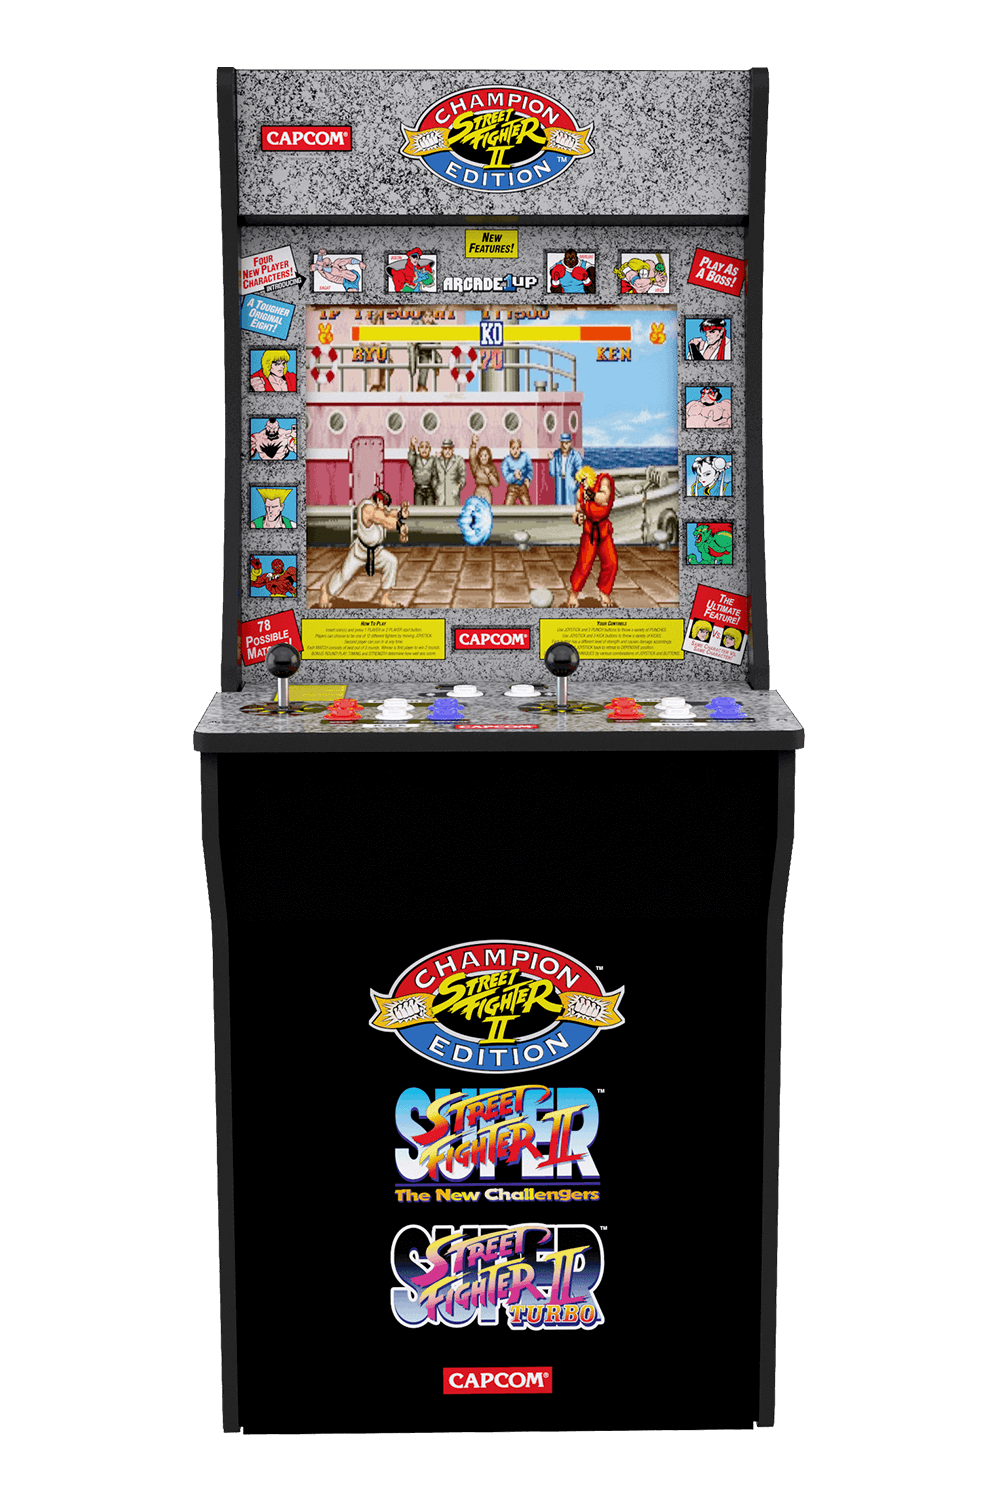 Street Fighter Arcade Cabinet Arcade1up